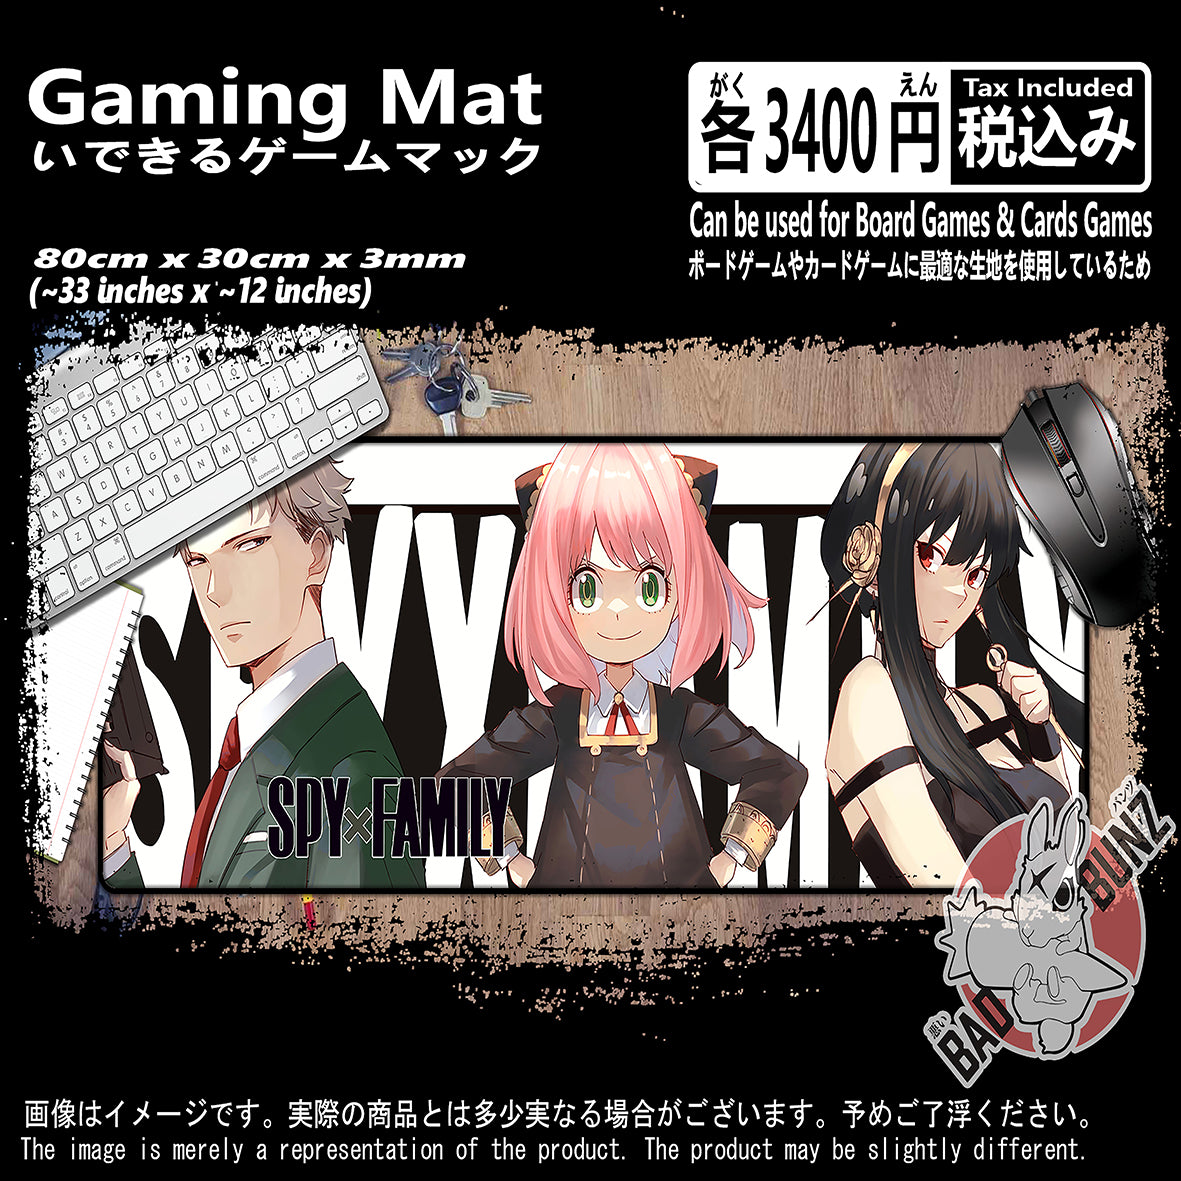 (AN-SPY-02) Spy X Family Anime 800mm x 300mm Gaming Play Mat